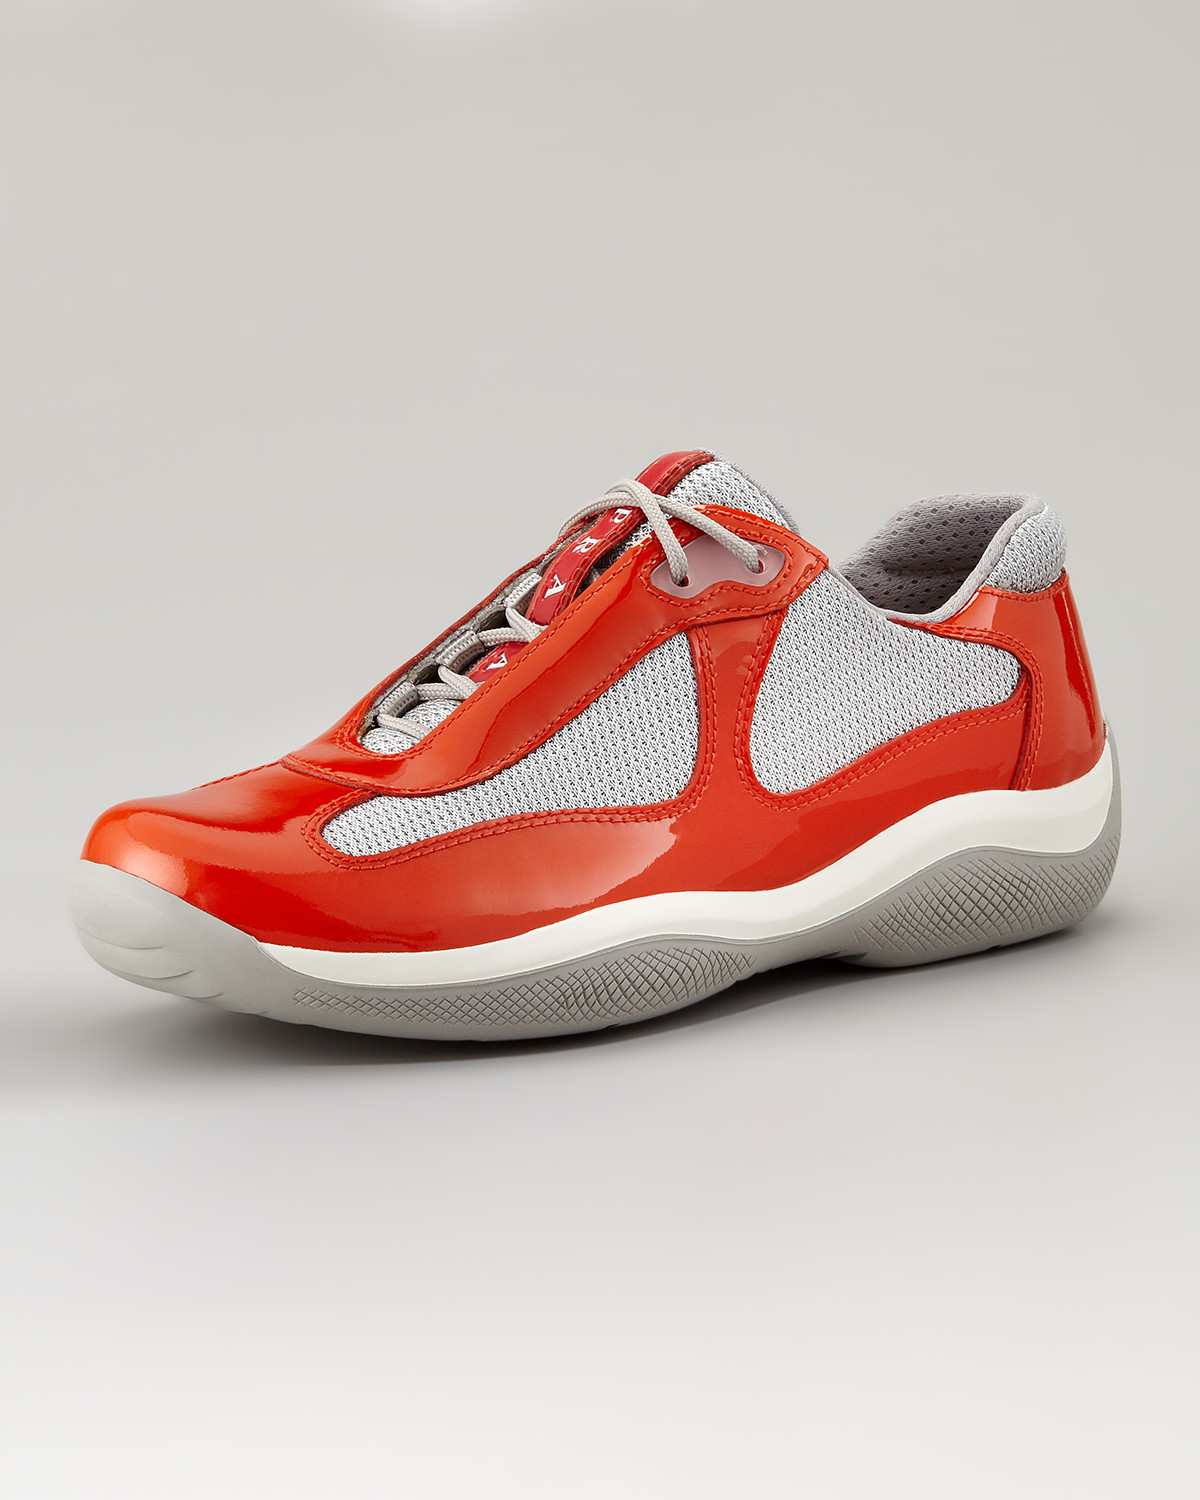 prada sneakers orange